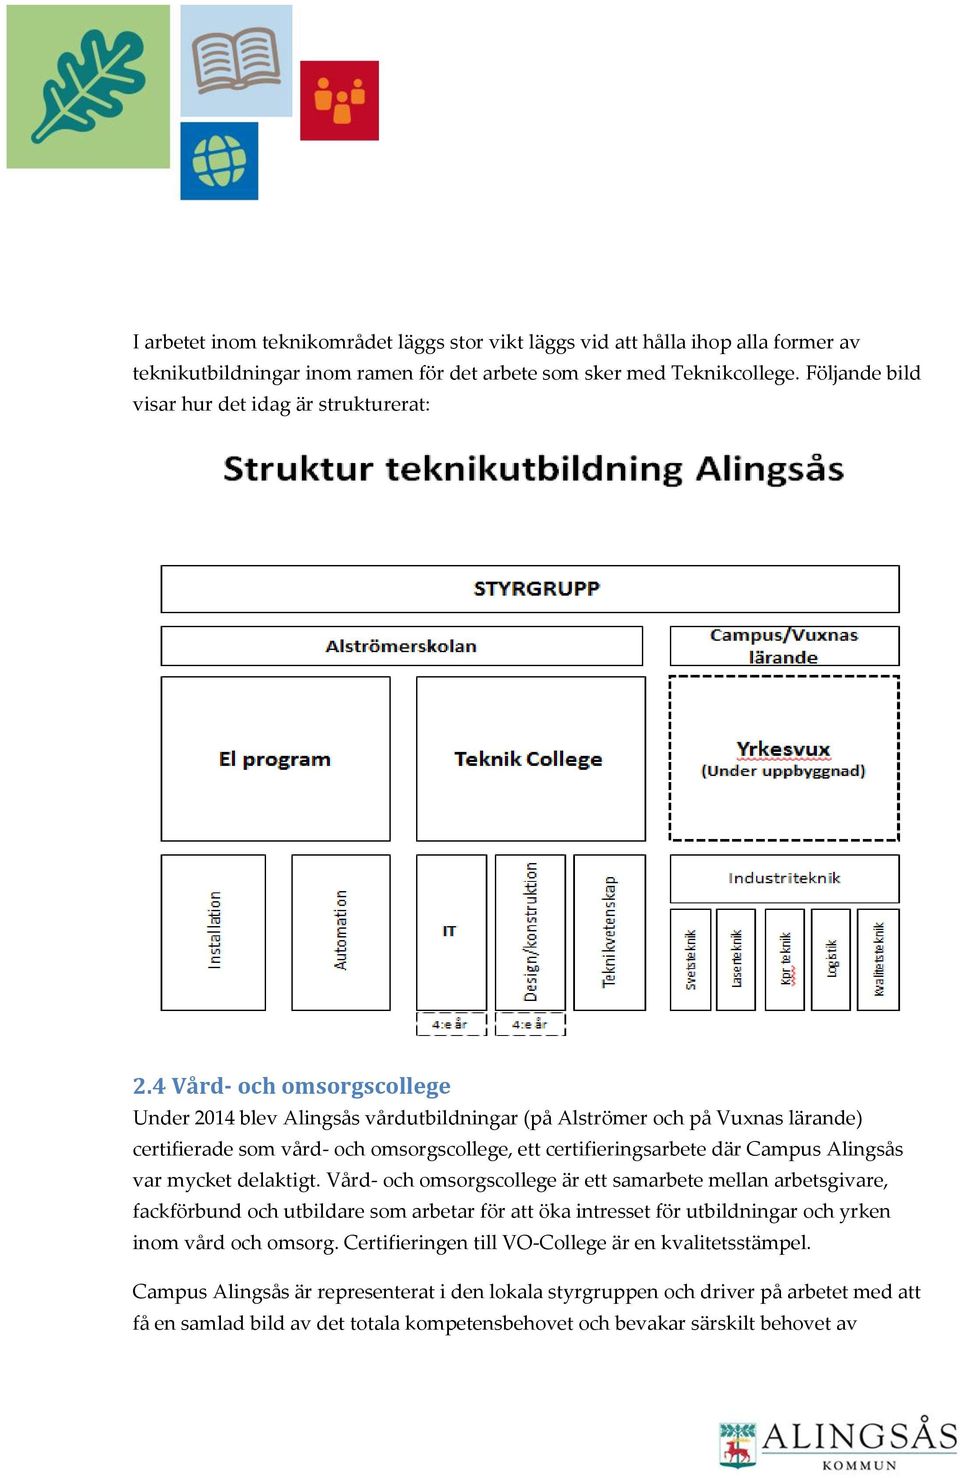 4 Vård- ch msrgscllege Under 2014 blev Alingsås vårdutbildningar (på Alströmer ch på Vuxnas lärande) certifierade sm vård- ch msrgscllege, ett certifieringsarbete där Campus Alingsås var mycket